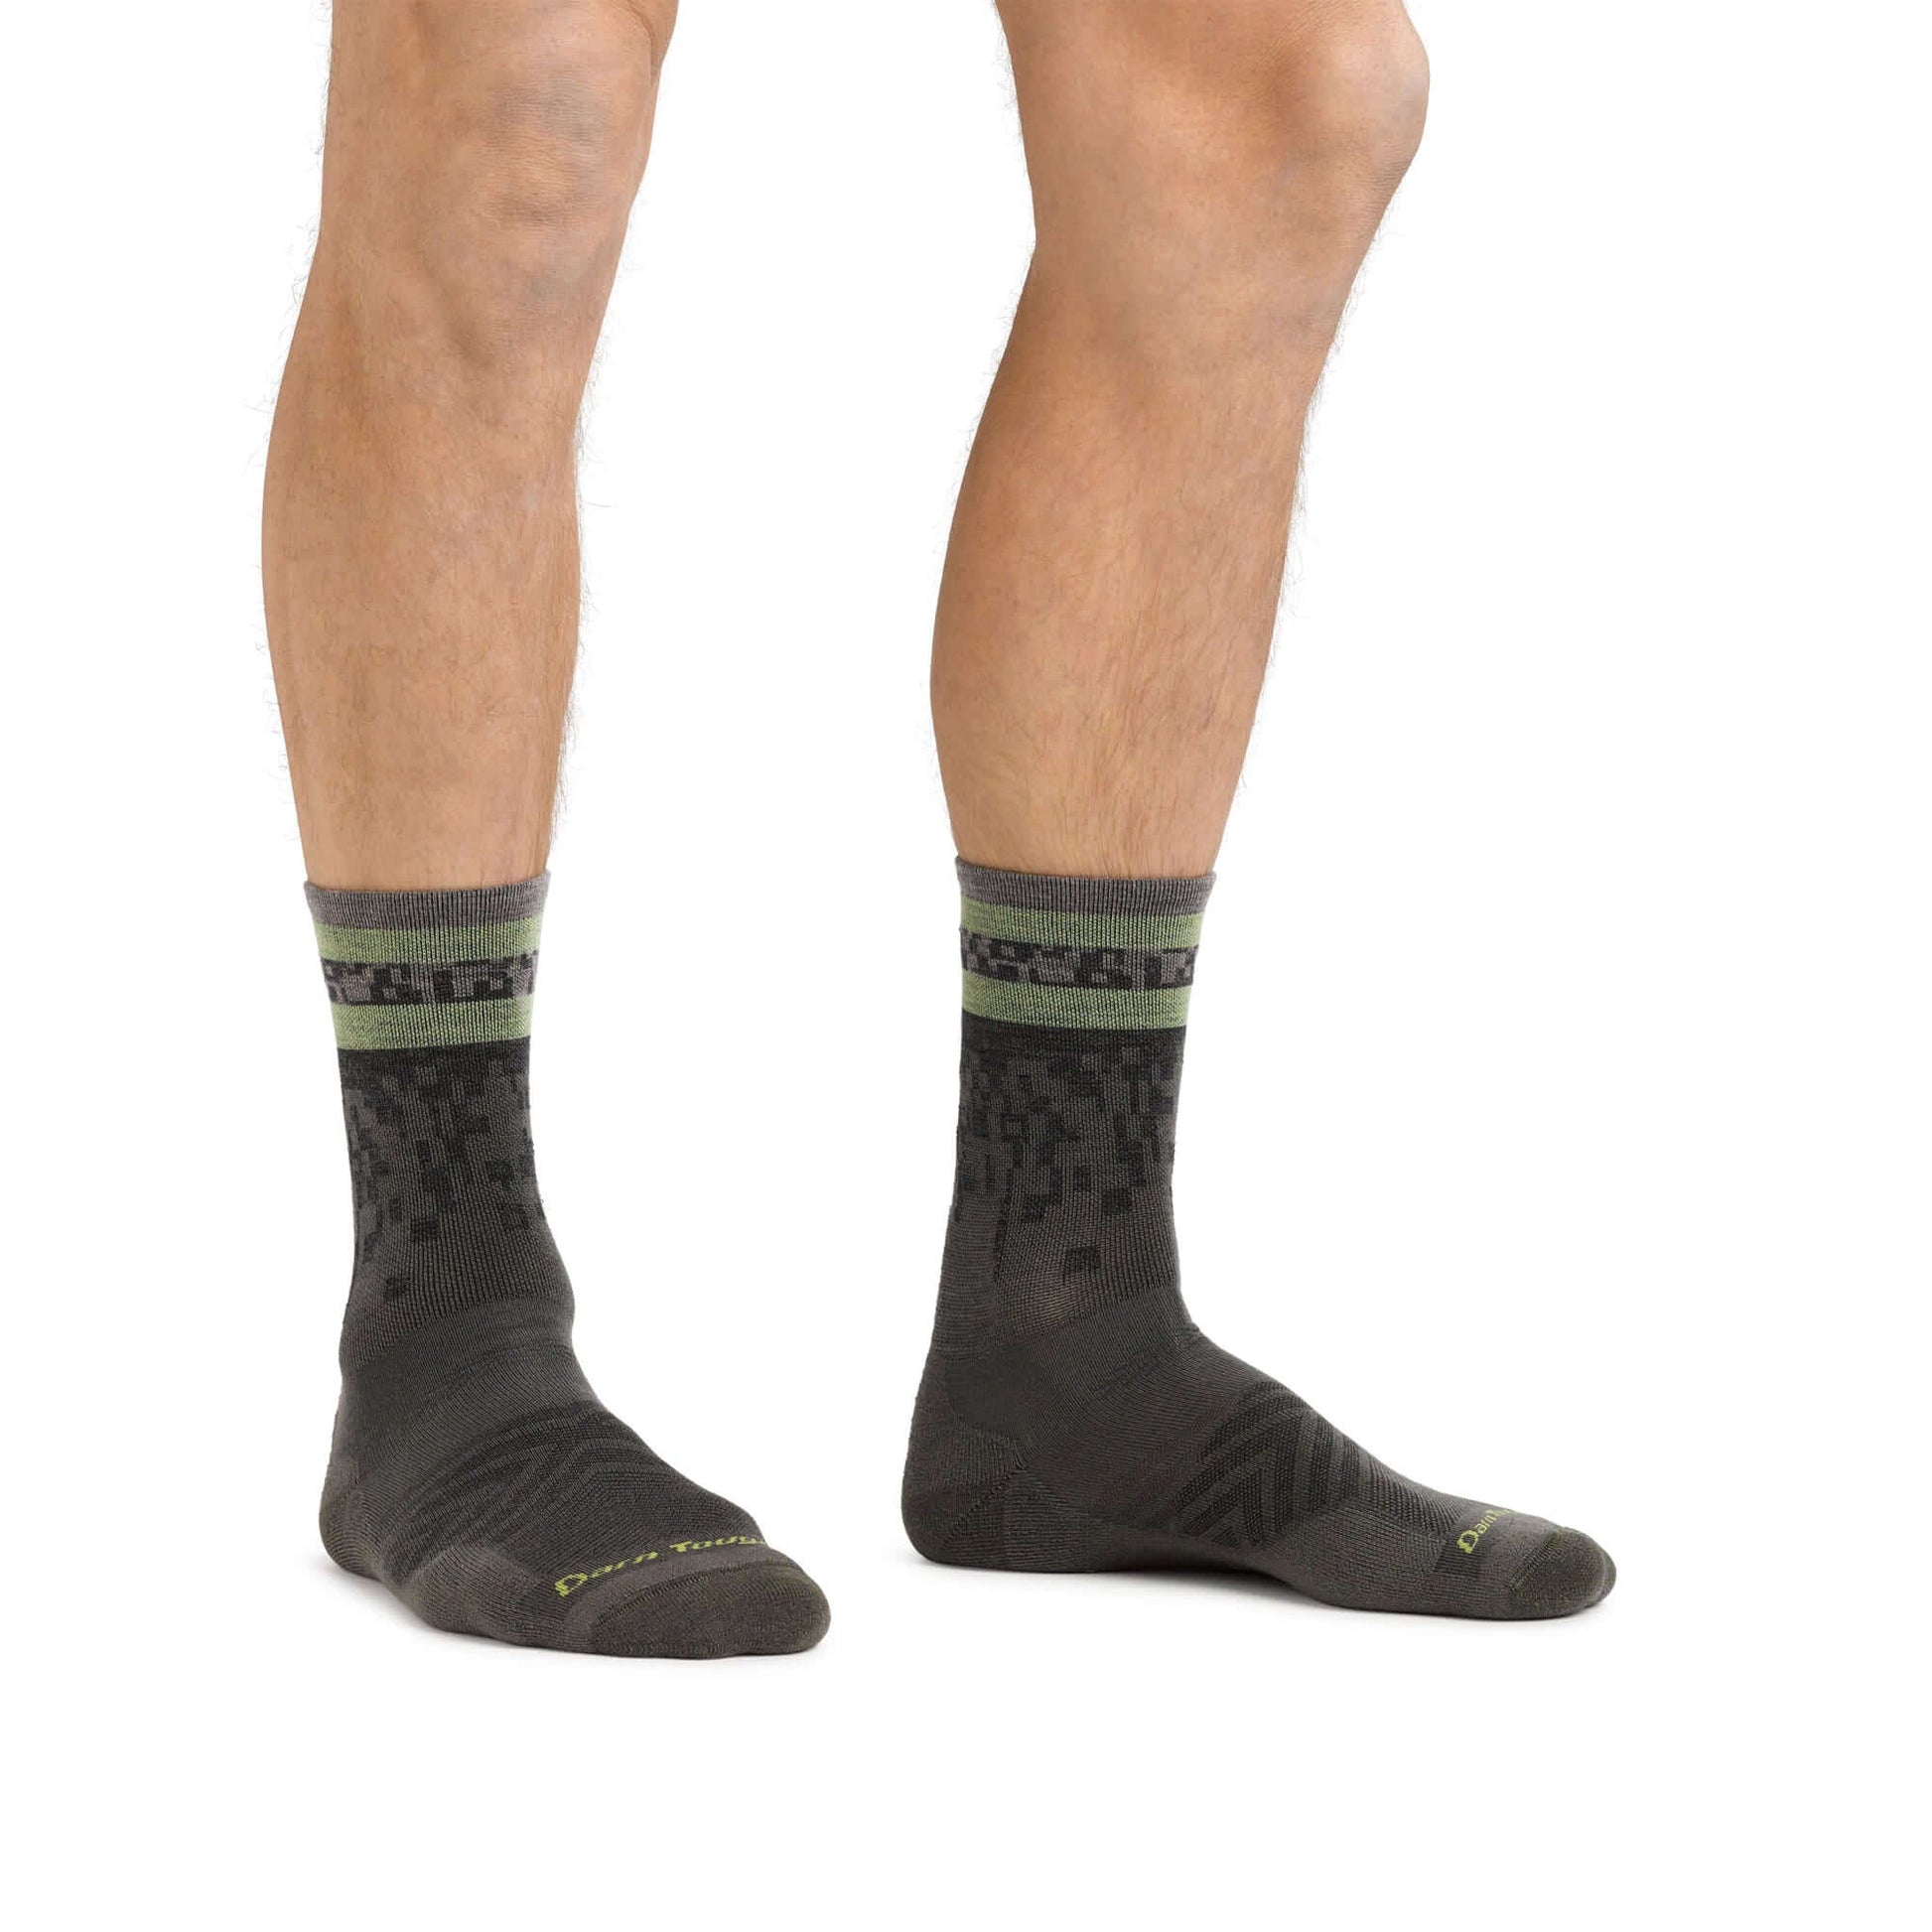 Darn Tough Calcetines de media caña con acolchado de running y trail de lana merina. Mod. Tempo 1042 color Color: Fatigue